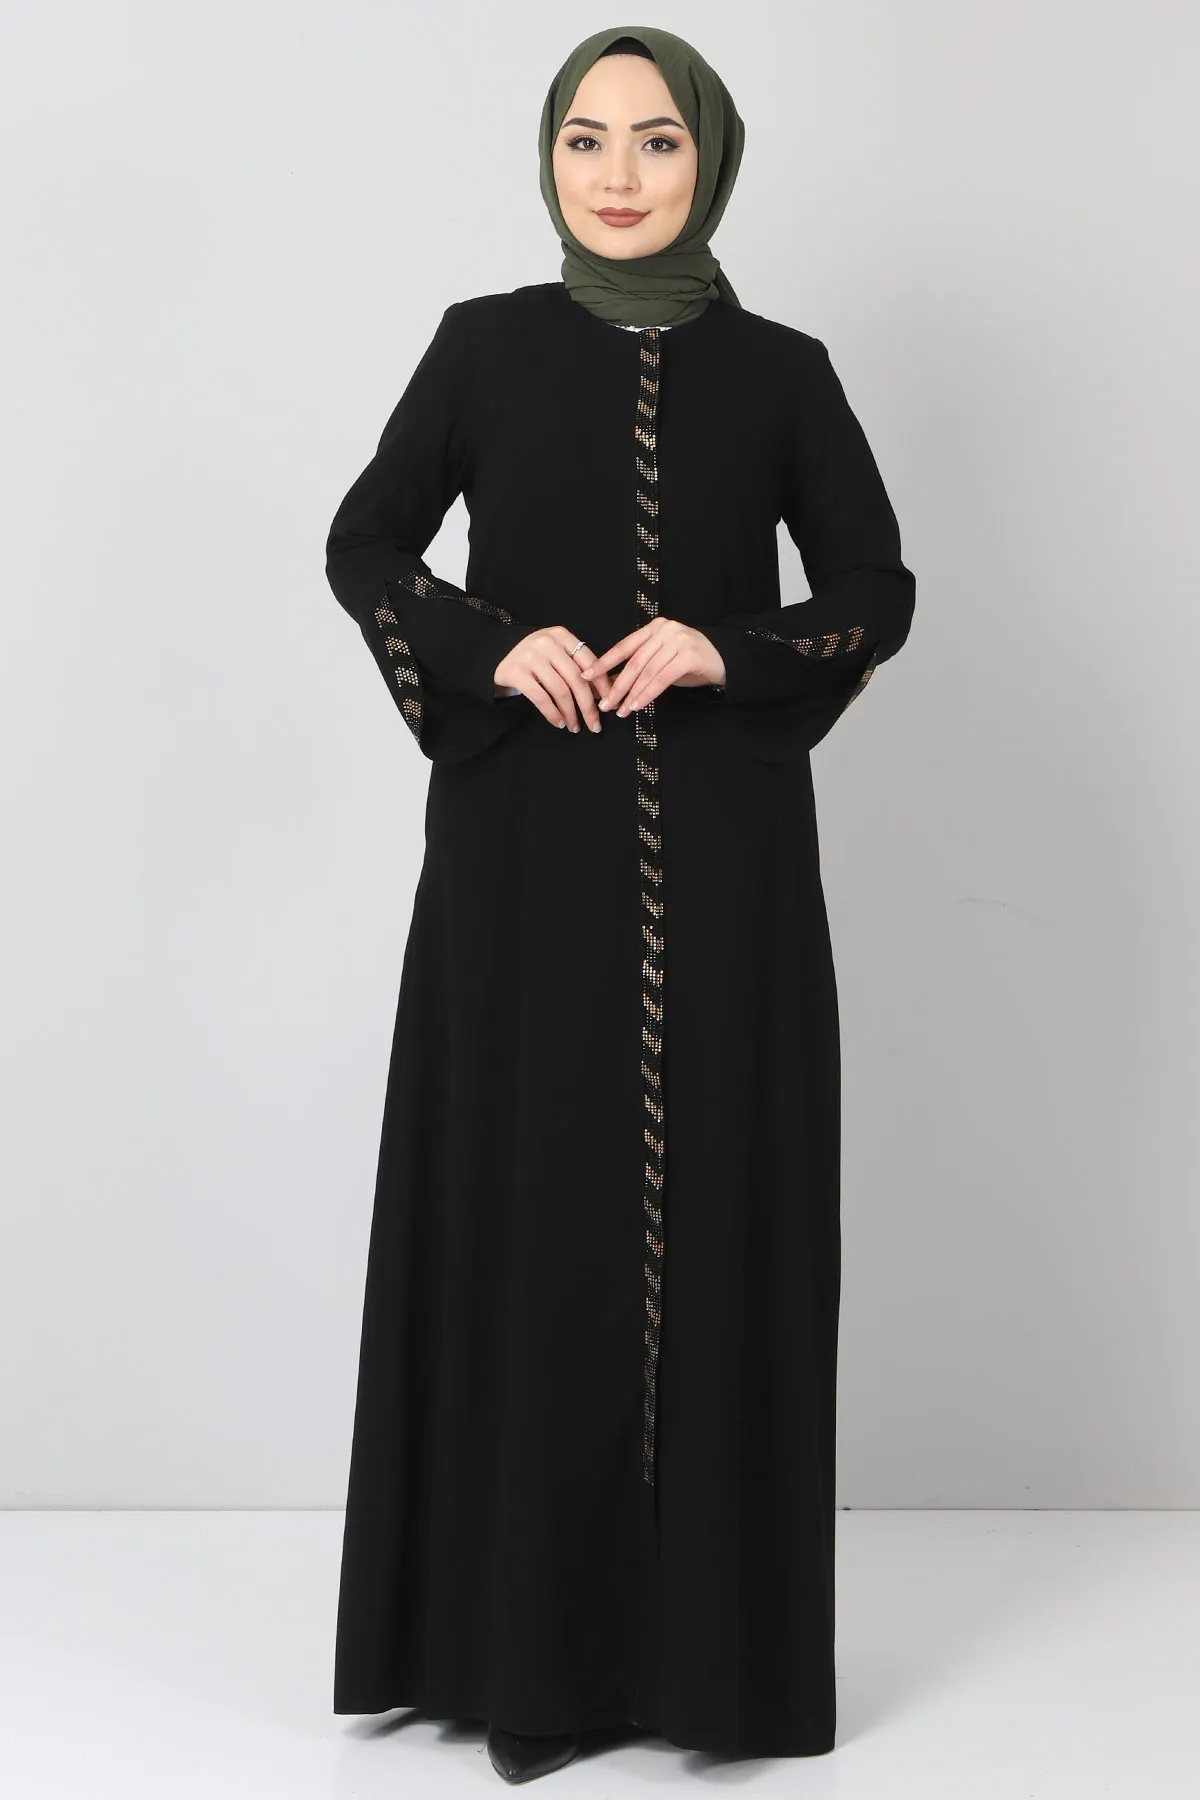 Женское платье-макси Abaya с отделкой под камни, мусульманское платье-абайя, платья-кафтан для женщин, юбка, Турция 2055